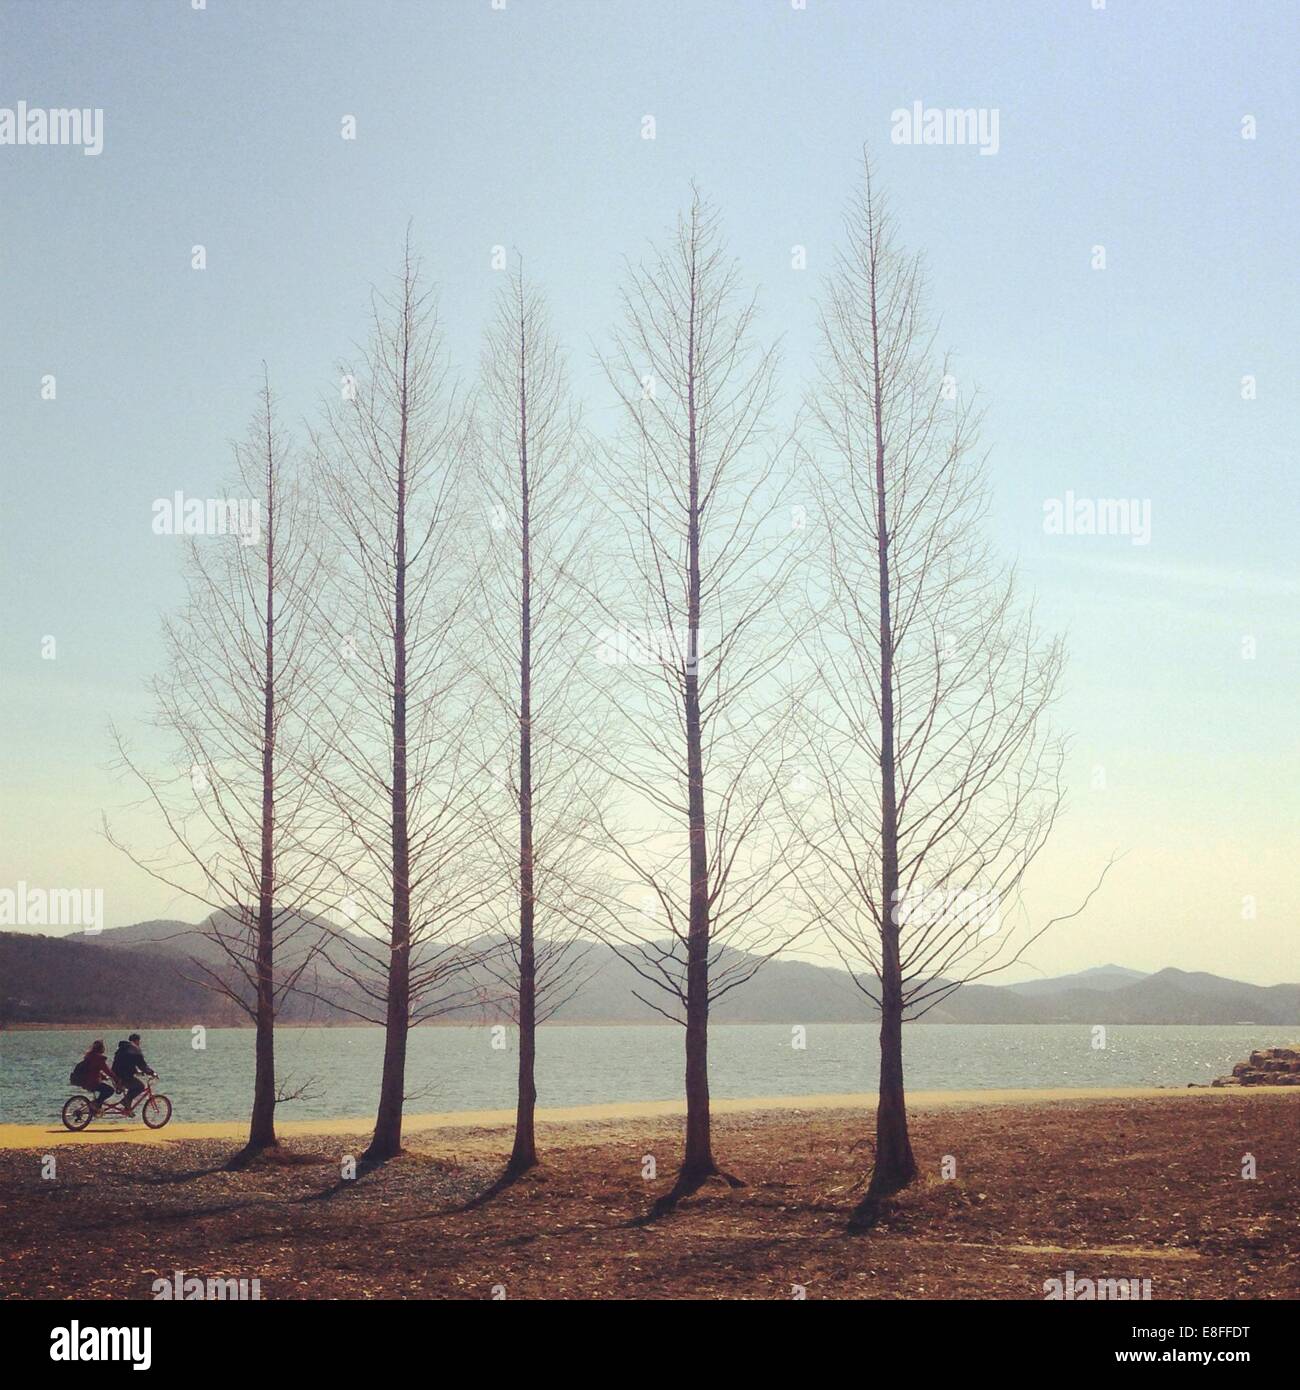 Coppia in bicicletta oltre una fila di alberi, Corea del Sud Foto Stock